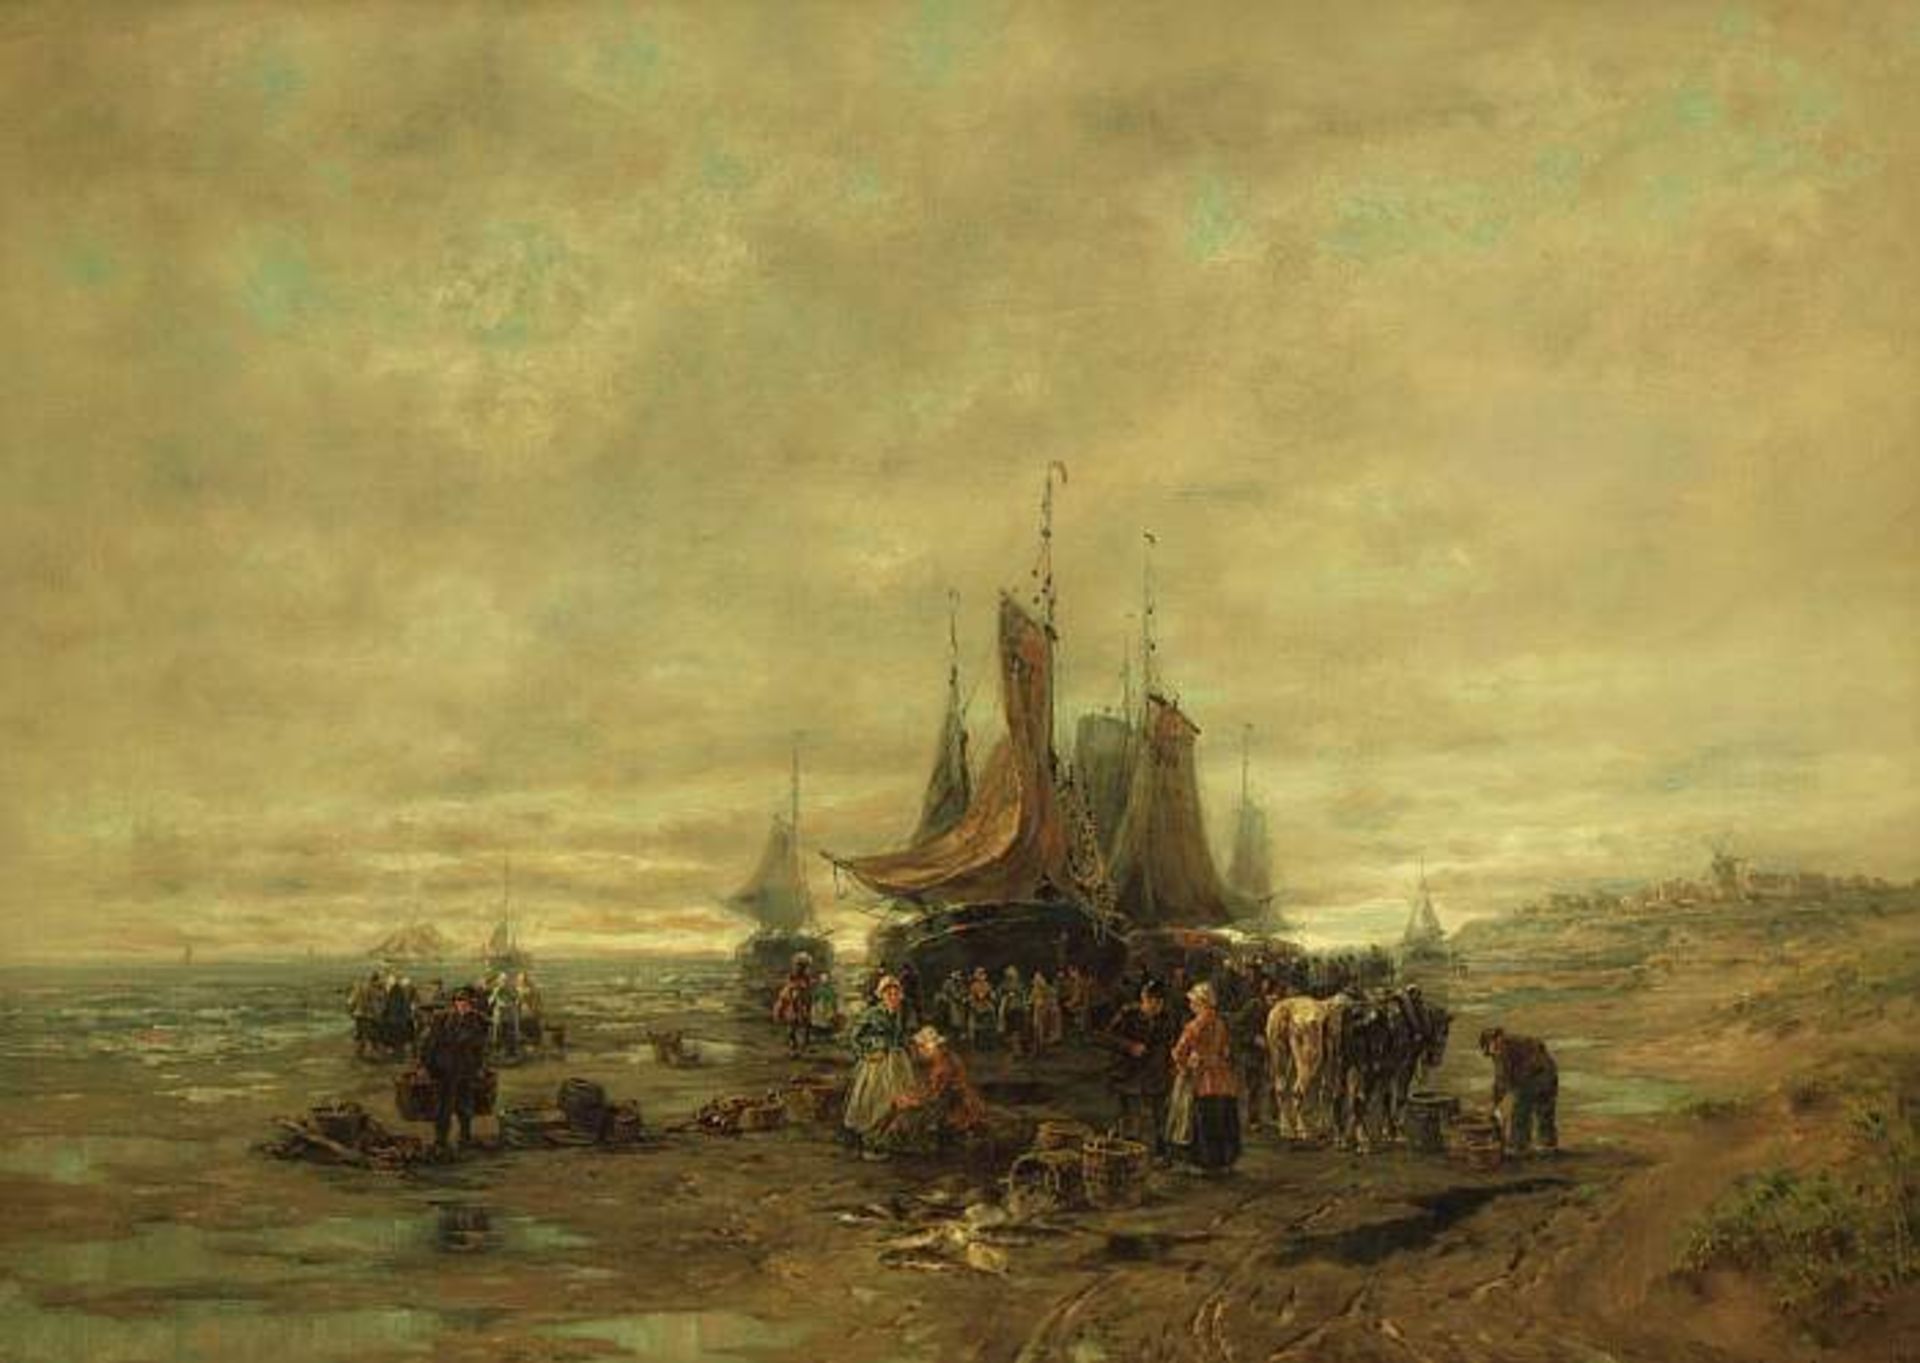 MATHISSEN, D. MATHISSEN, D. 19. Jahrhundert. Ankunft der Fischerboote. Öl auf Leinwand, rechts unten